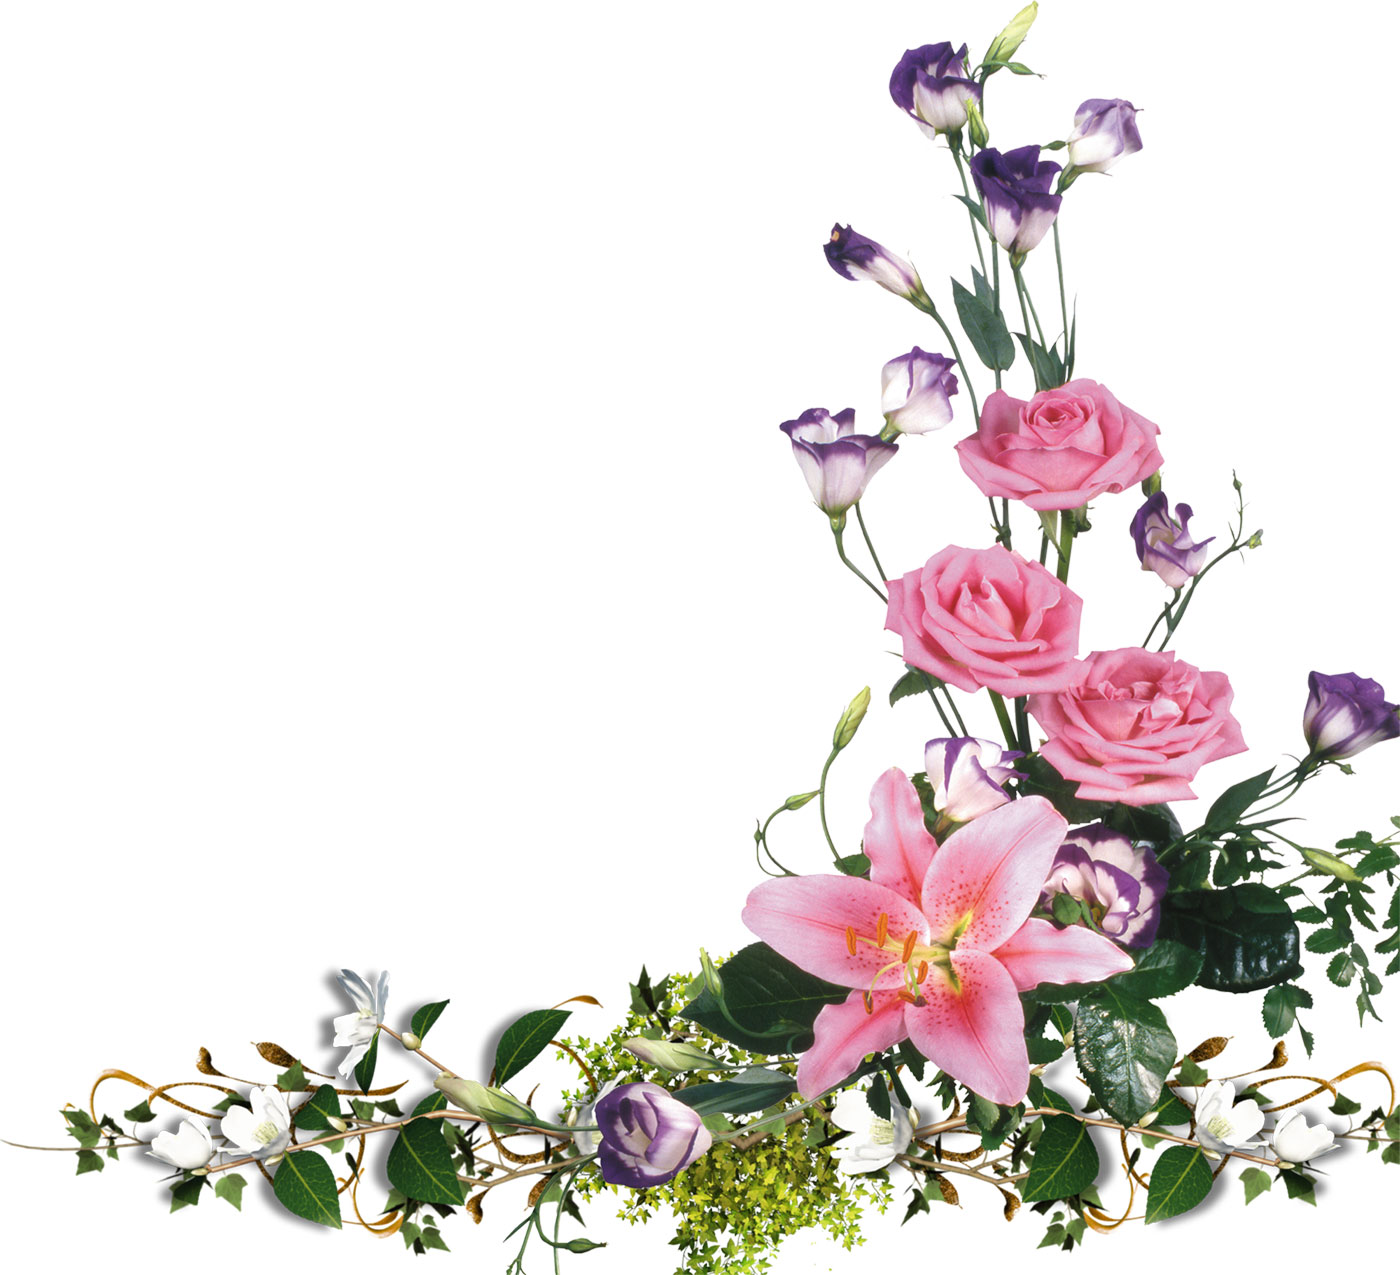 百合 ゆり の花の写真 画像 フリー素材 No 326 ピンク 紫の花々